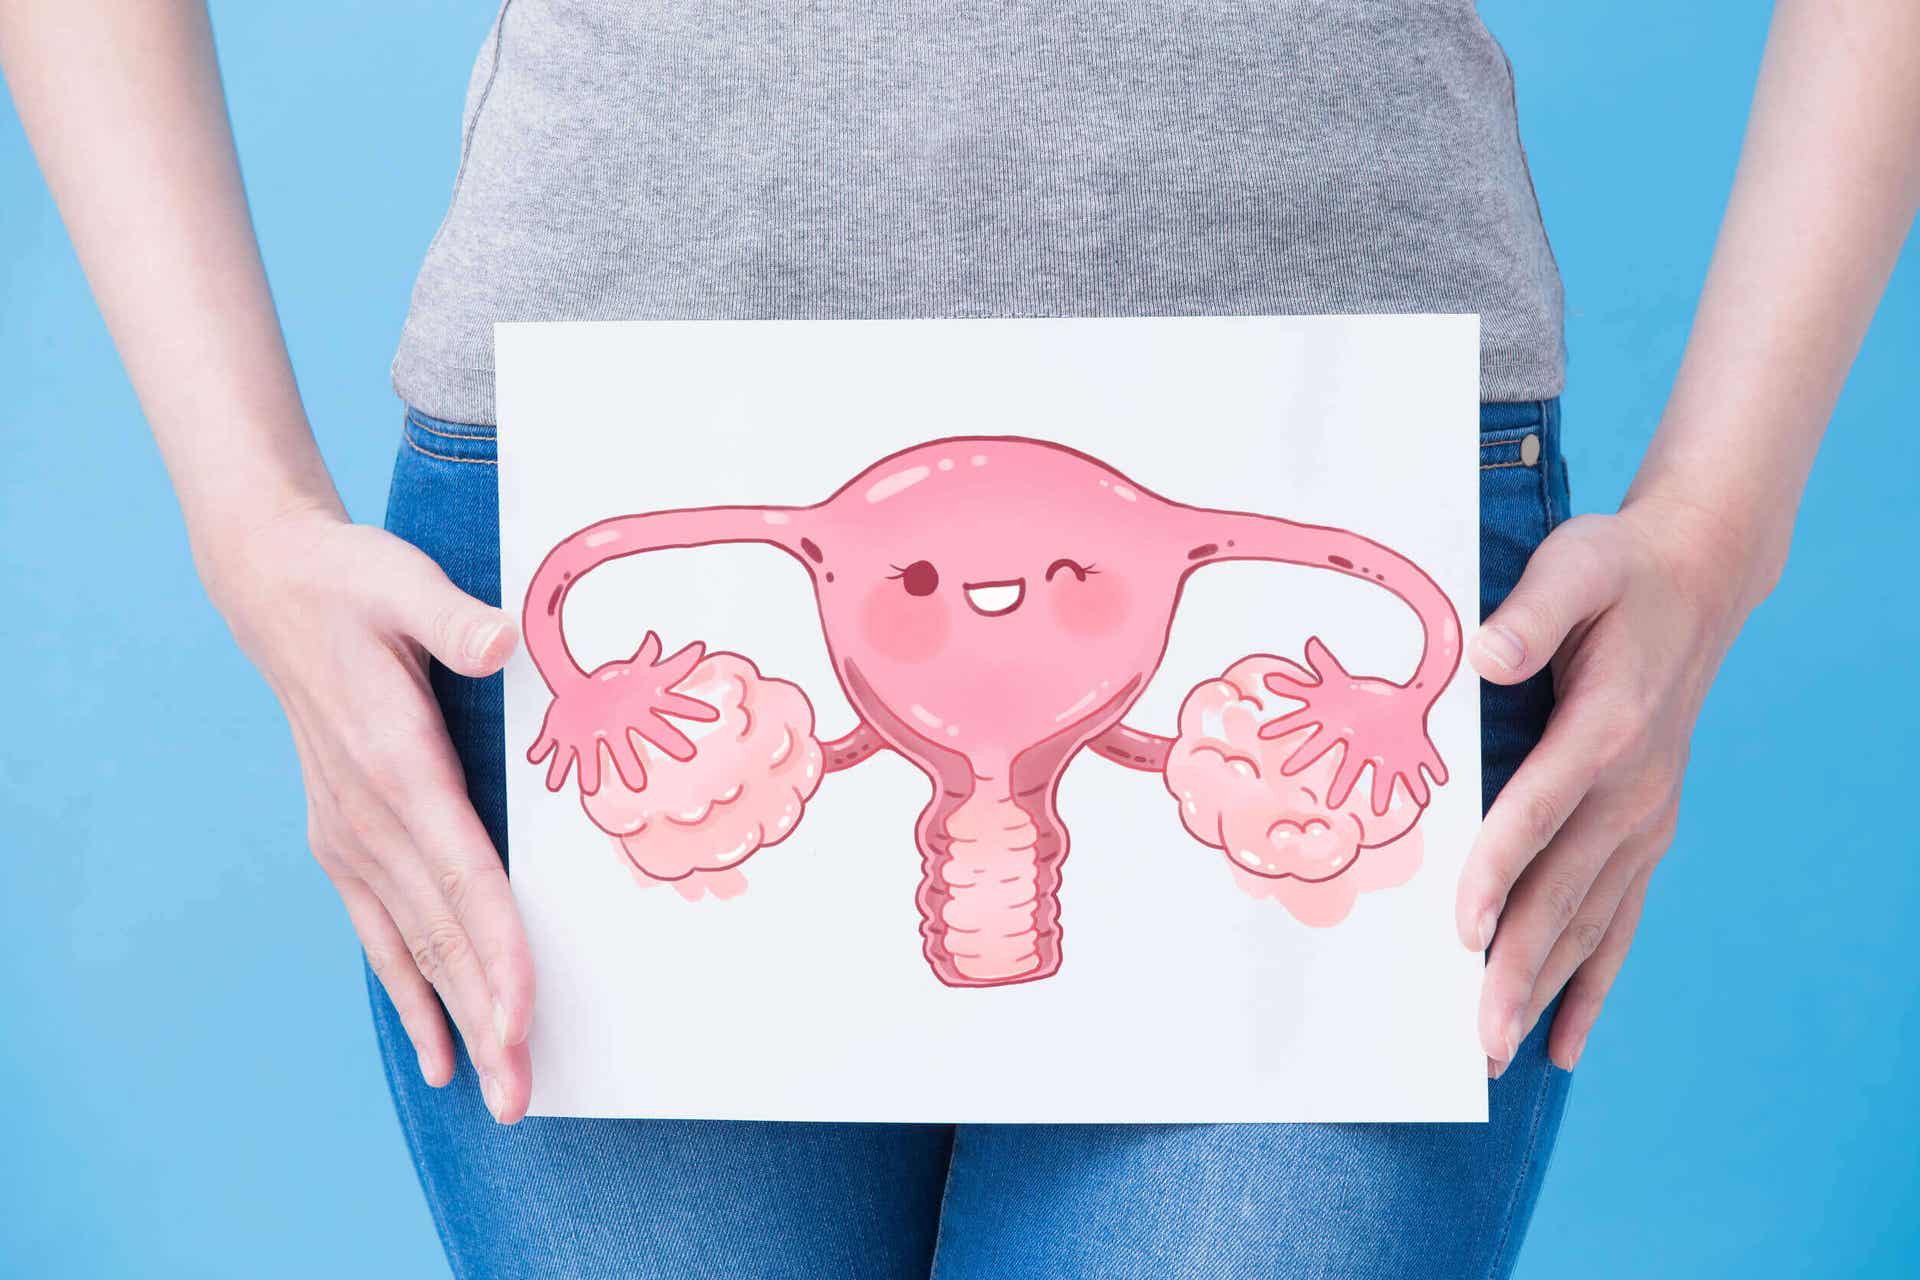 Kobieta trzymająca rysunek przedstawiający żeńskie narządy rozrodcze nad podbrzuszem.